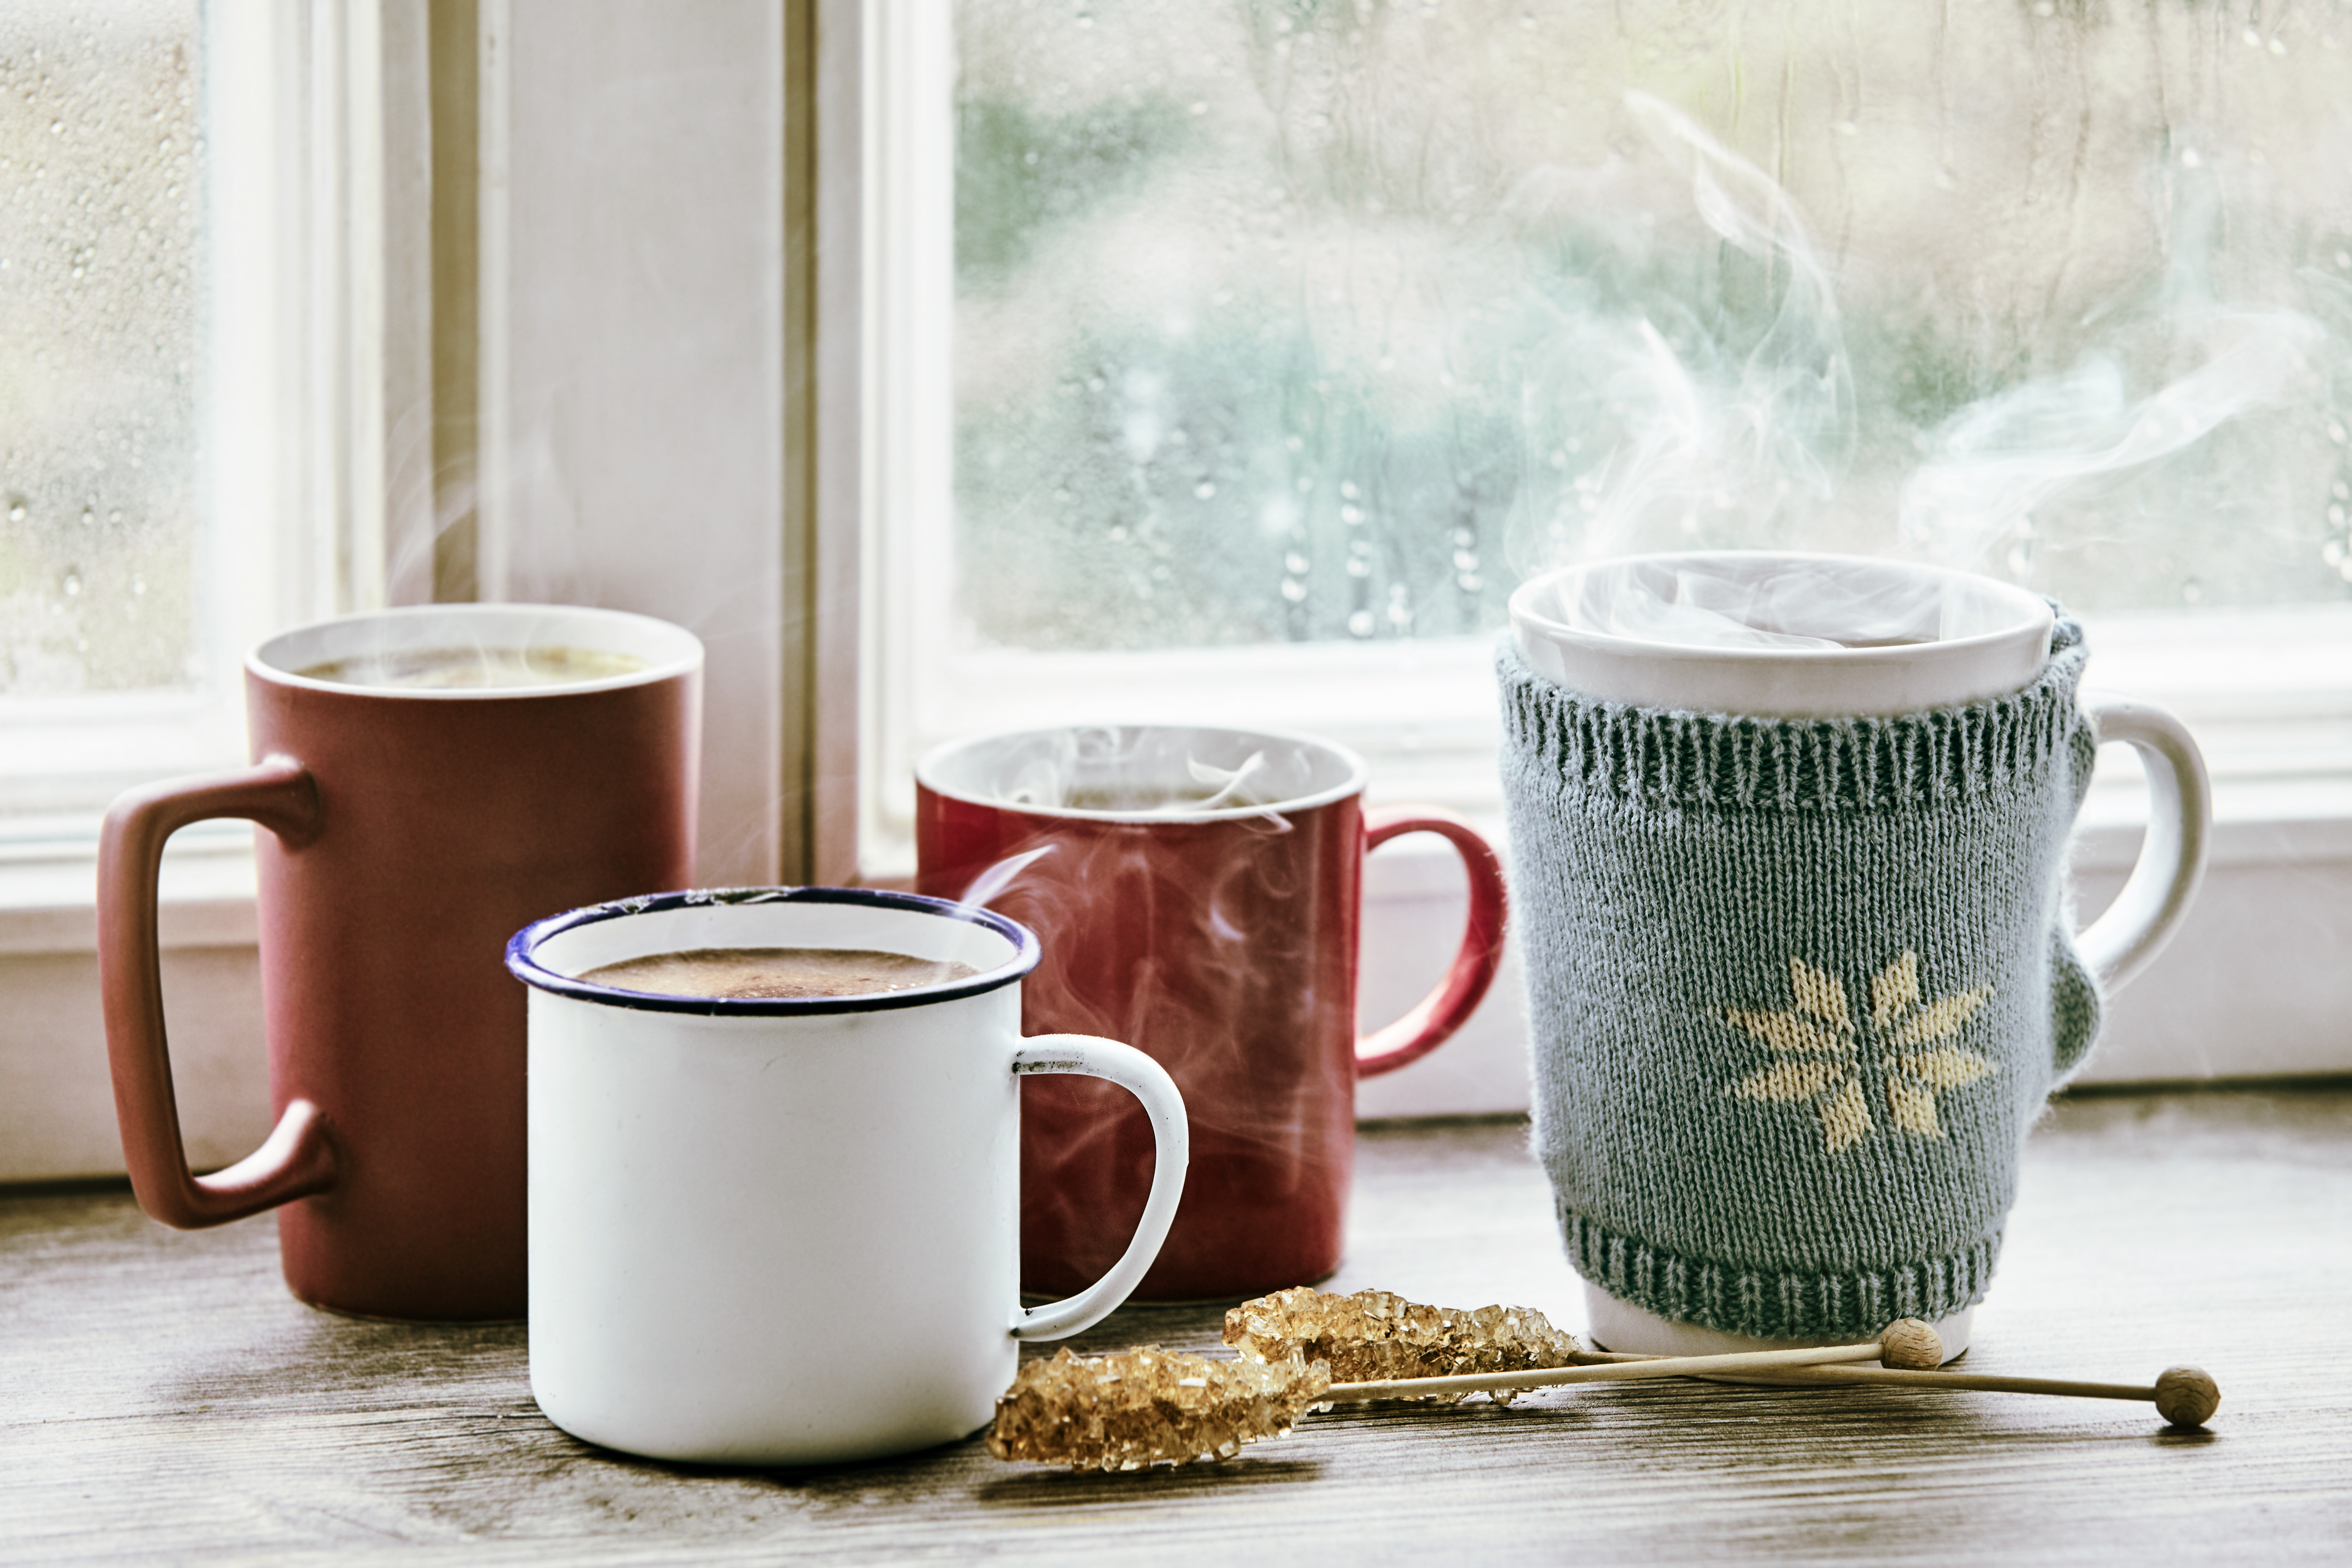 Coffee mugs by the window